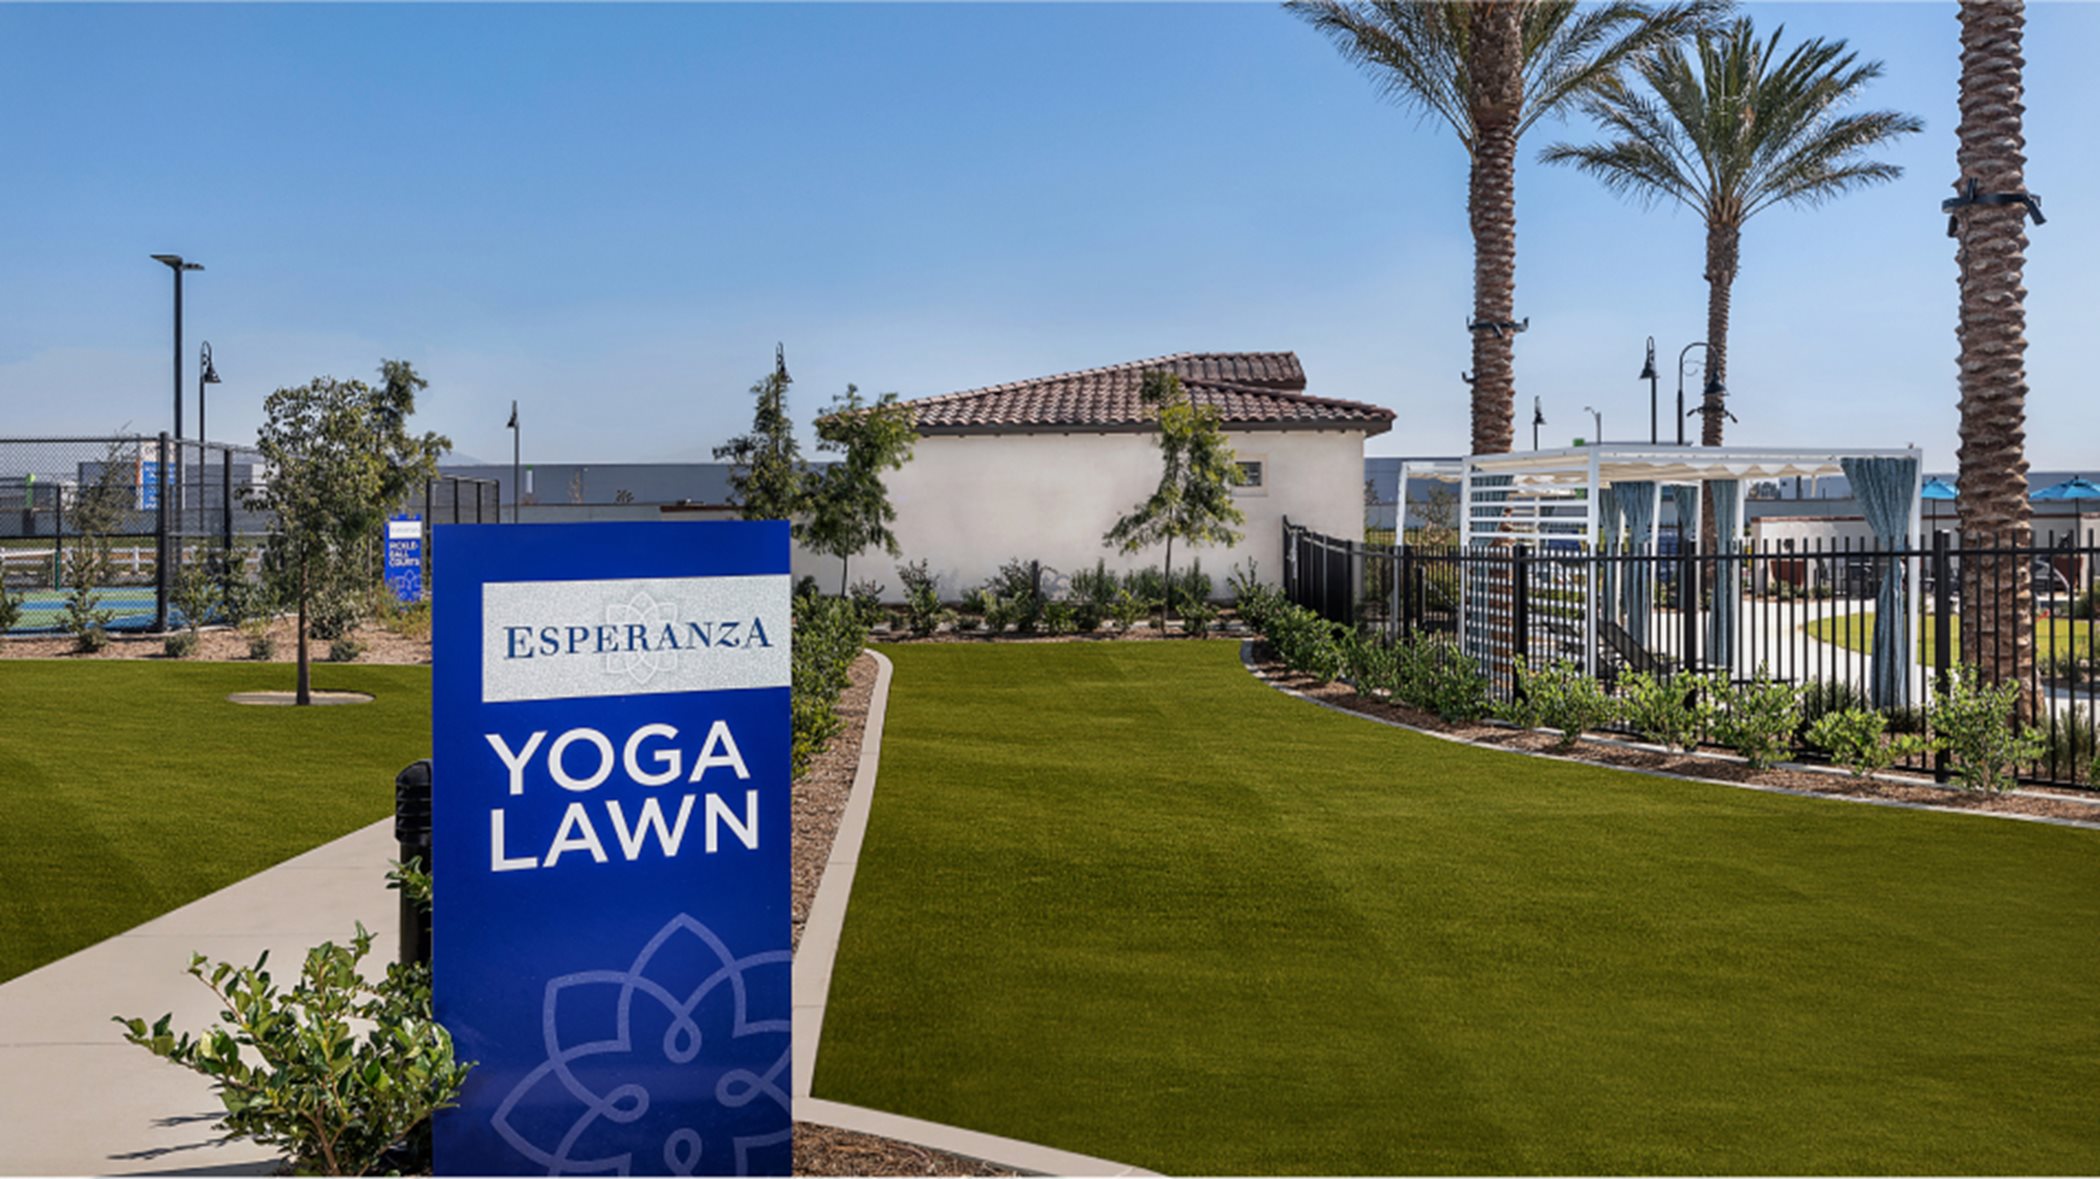 Outdoor yoga lawn